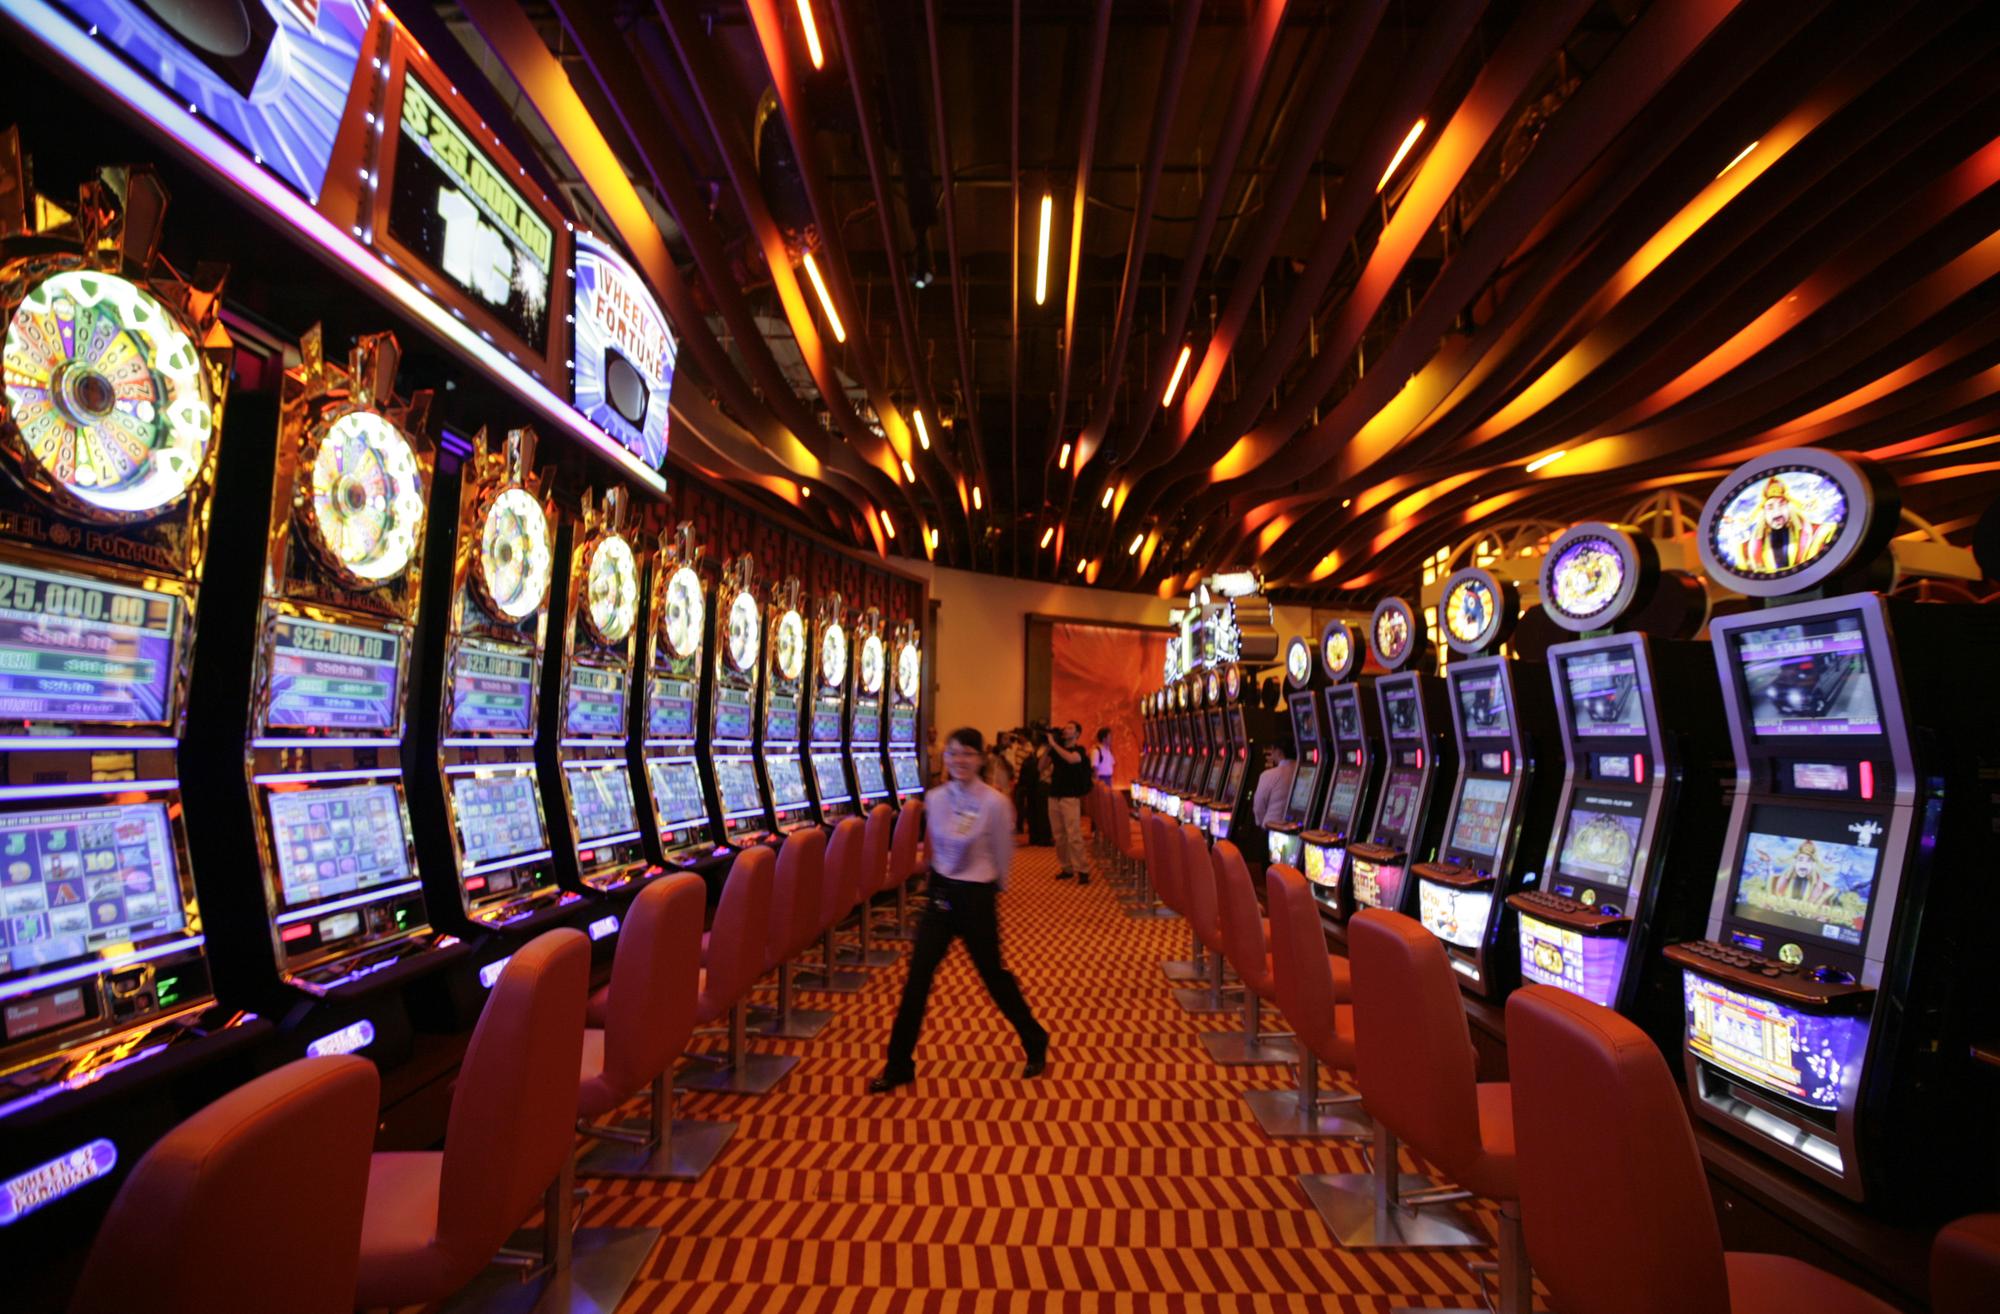 Pour les casinos, les machines à sous rapportent davantage que les tournois de poker.